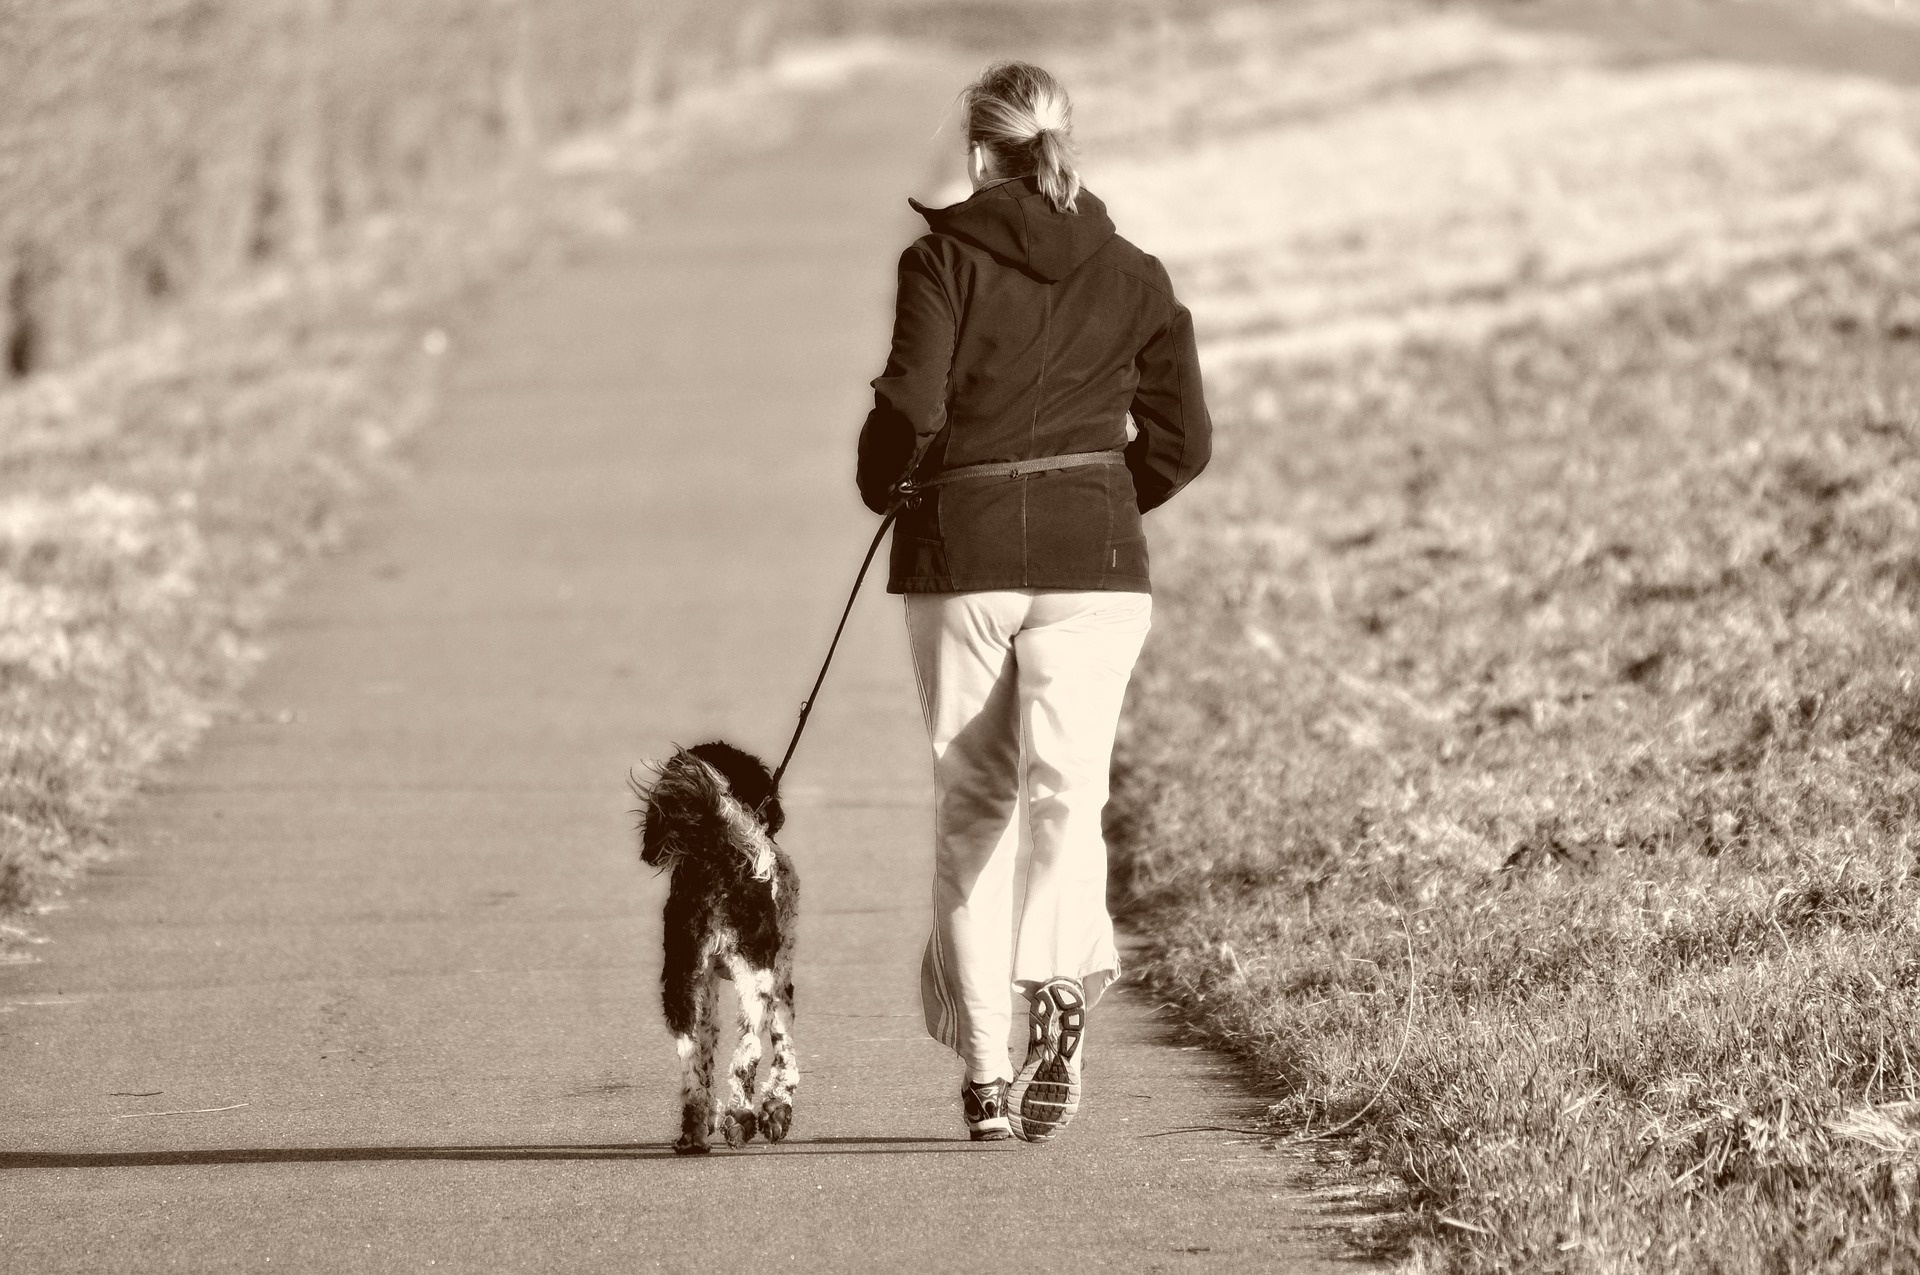 Versicherungsschutz für Läufer und Jogger mit Hund ist unverzichtbar. Selbst dem bravsten Hund passiert schon mal ein Missgeschick